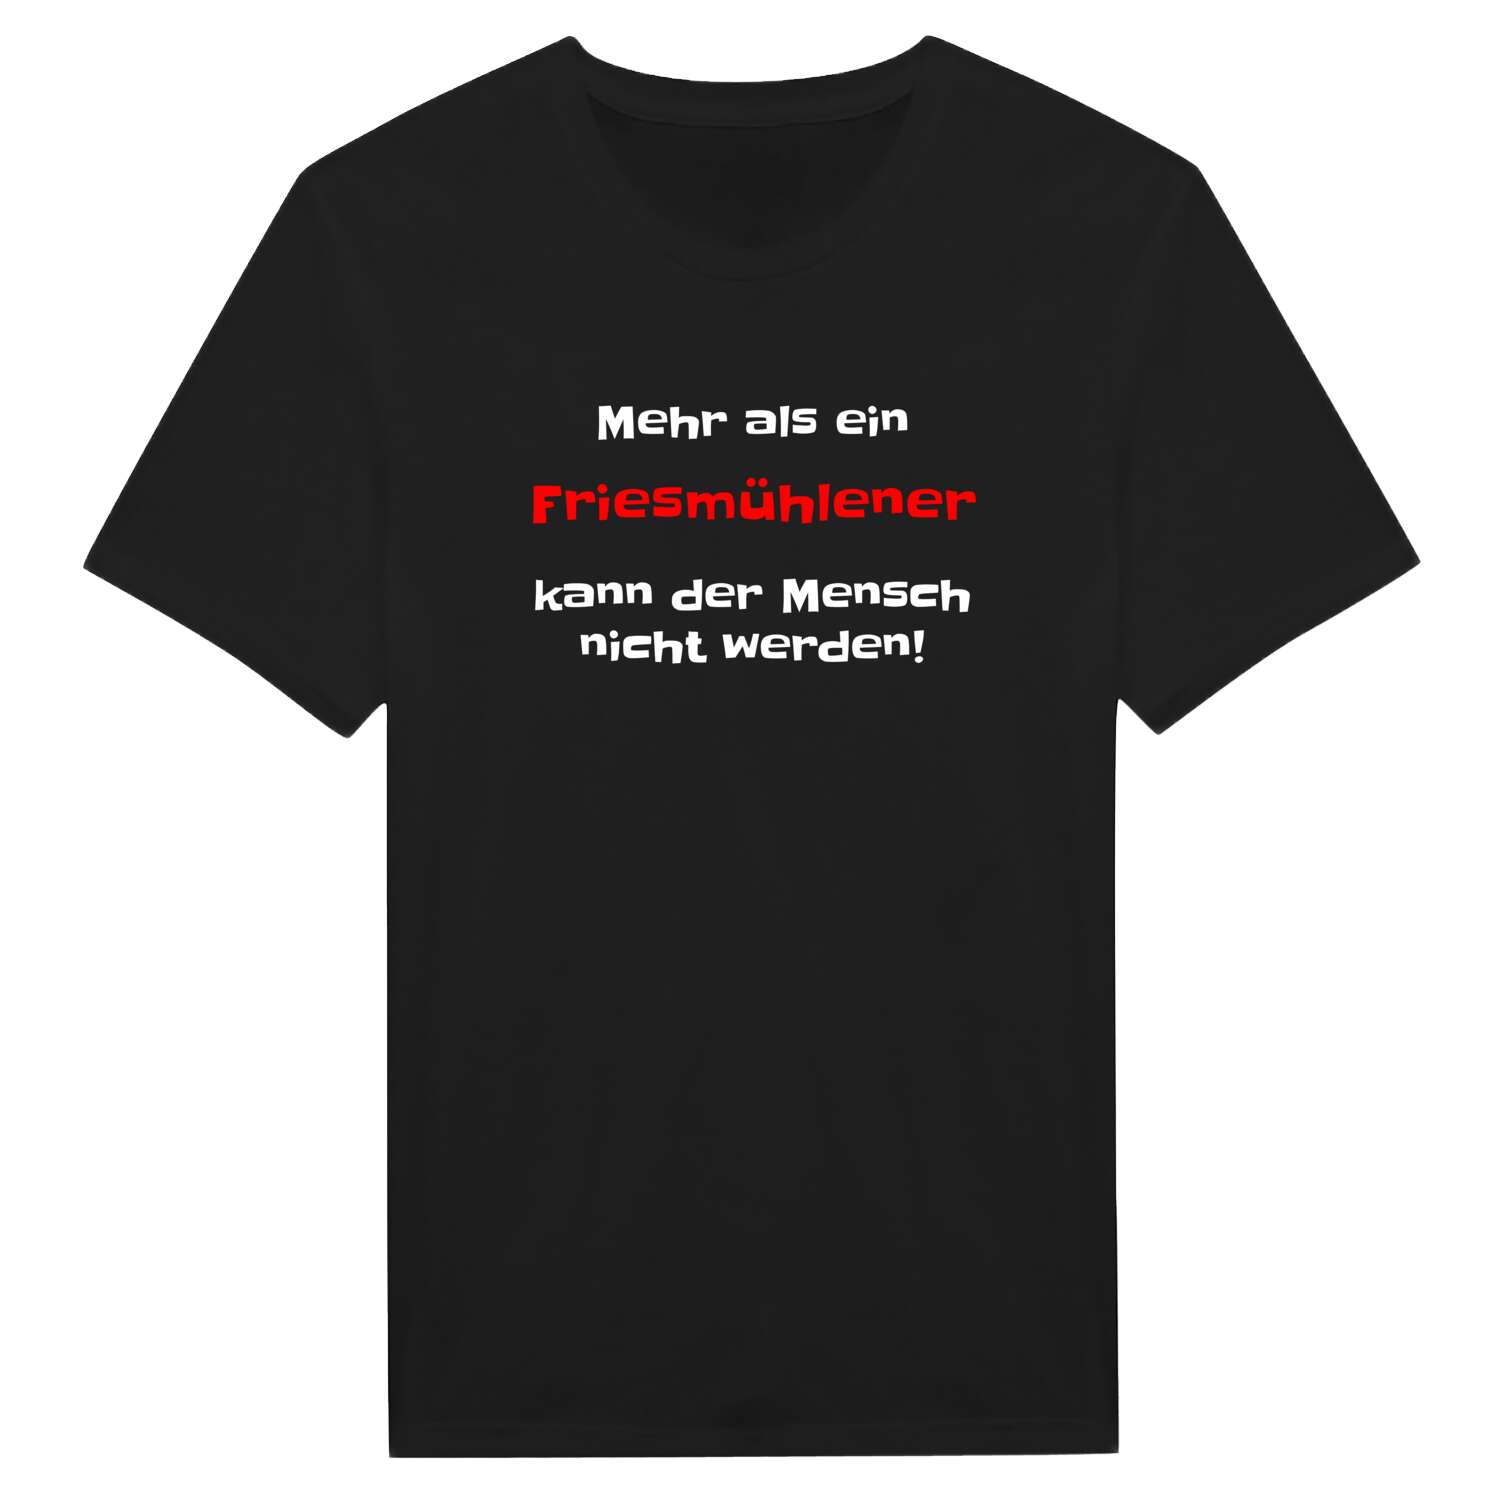 Friesmühle T-Shirt »Mehr als ein«